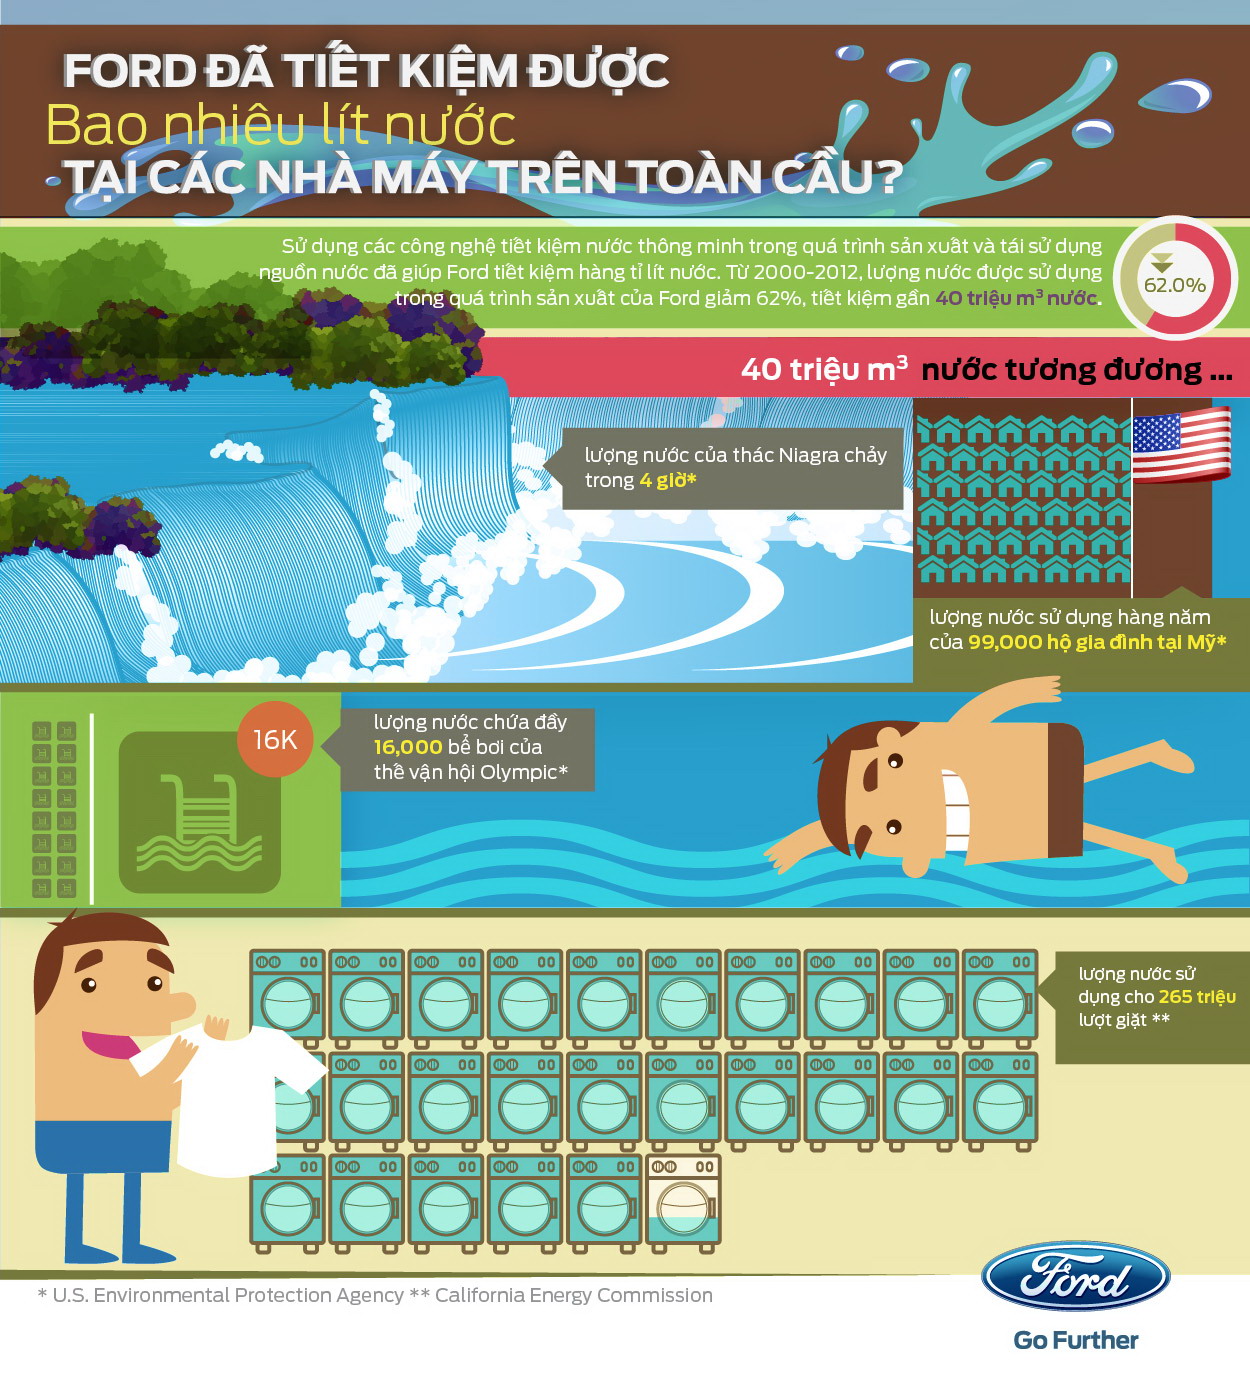 Ford dùng Infographic truyền tải thông điệp tiết kiệm nước